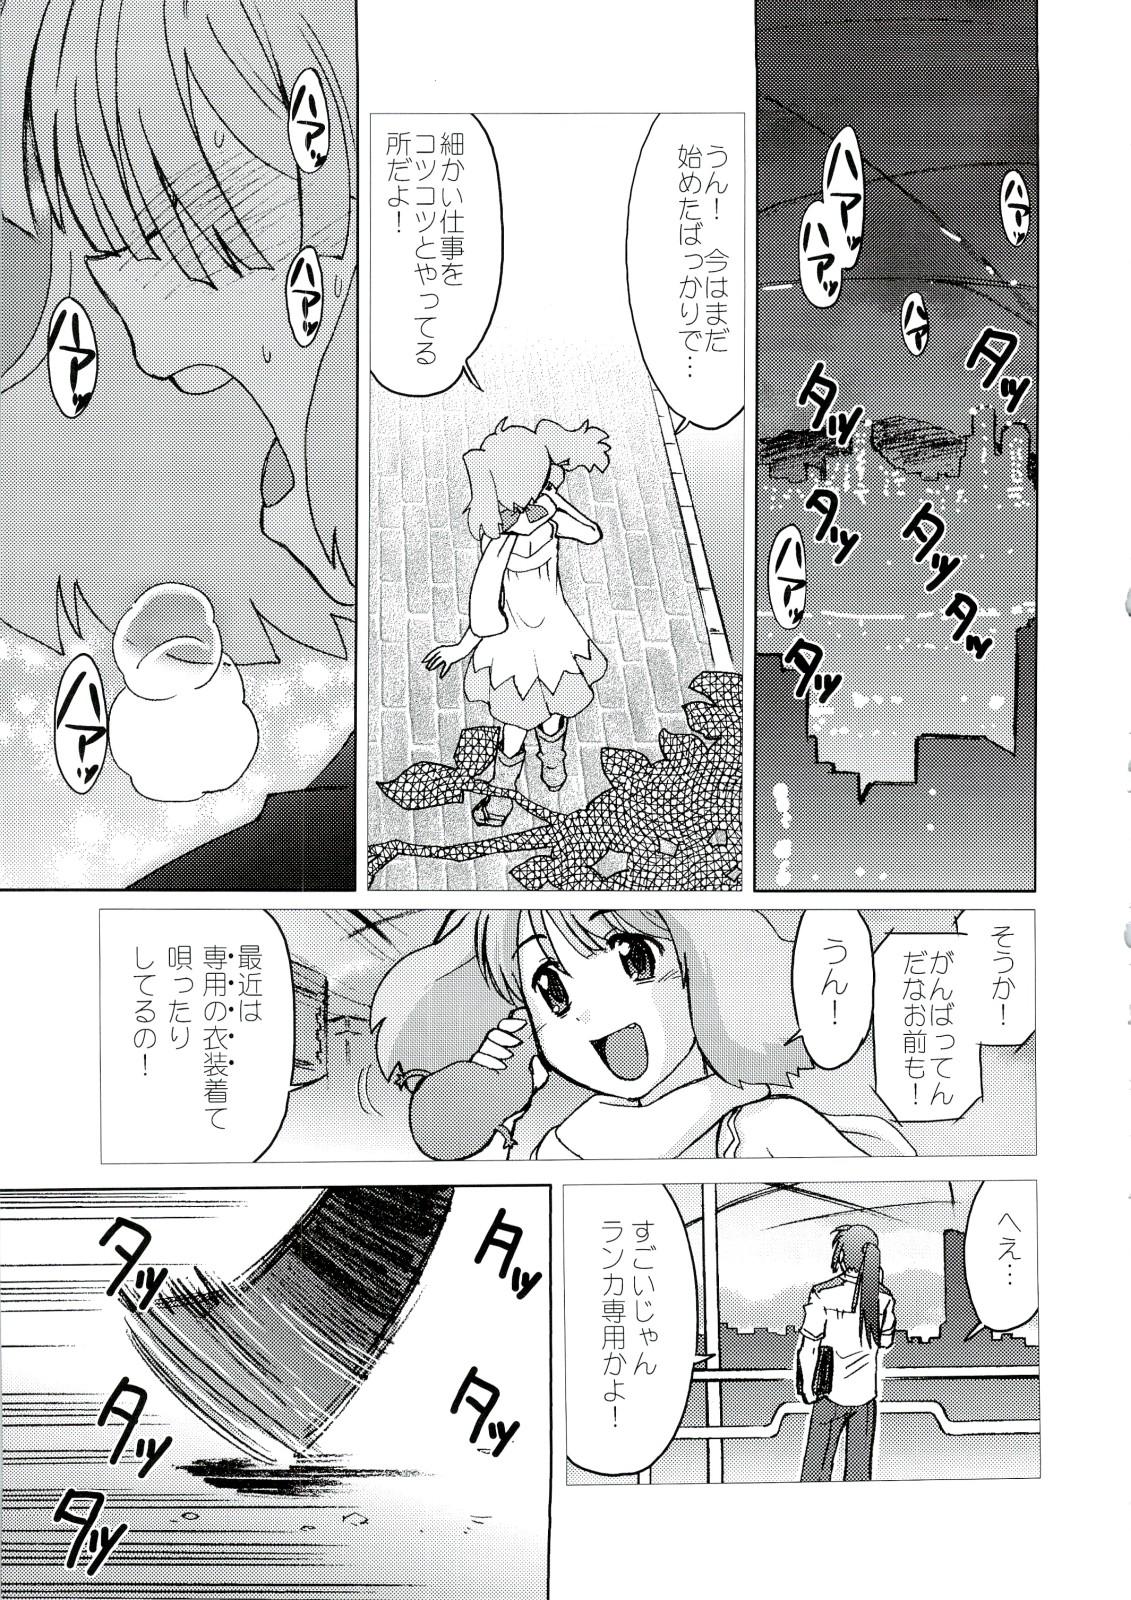 Rubbing Kishou Tenketsu 6 - Macross frontier Dick Sucking - Page 4